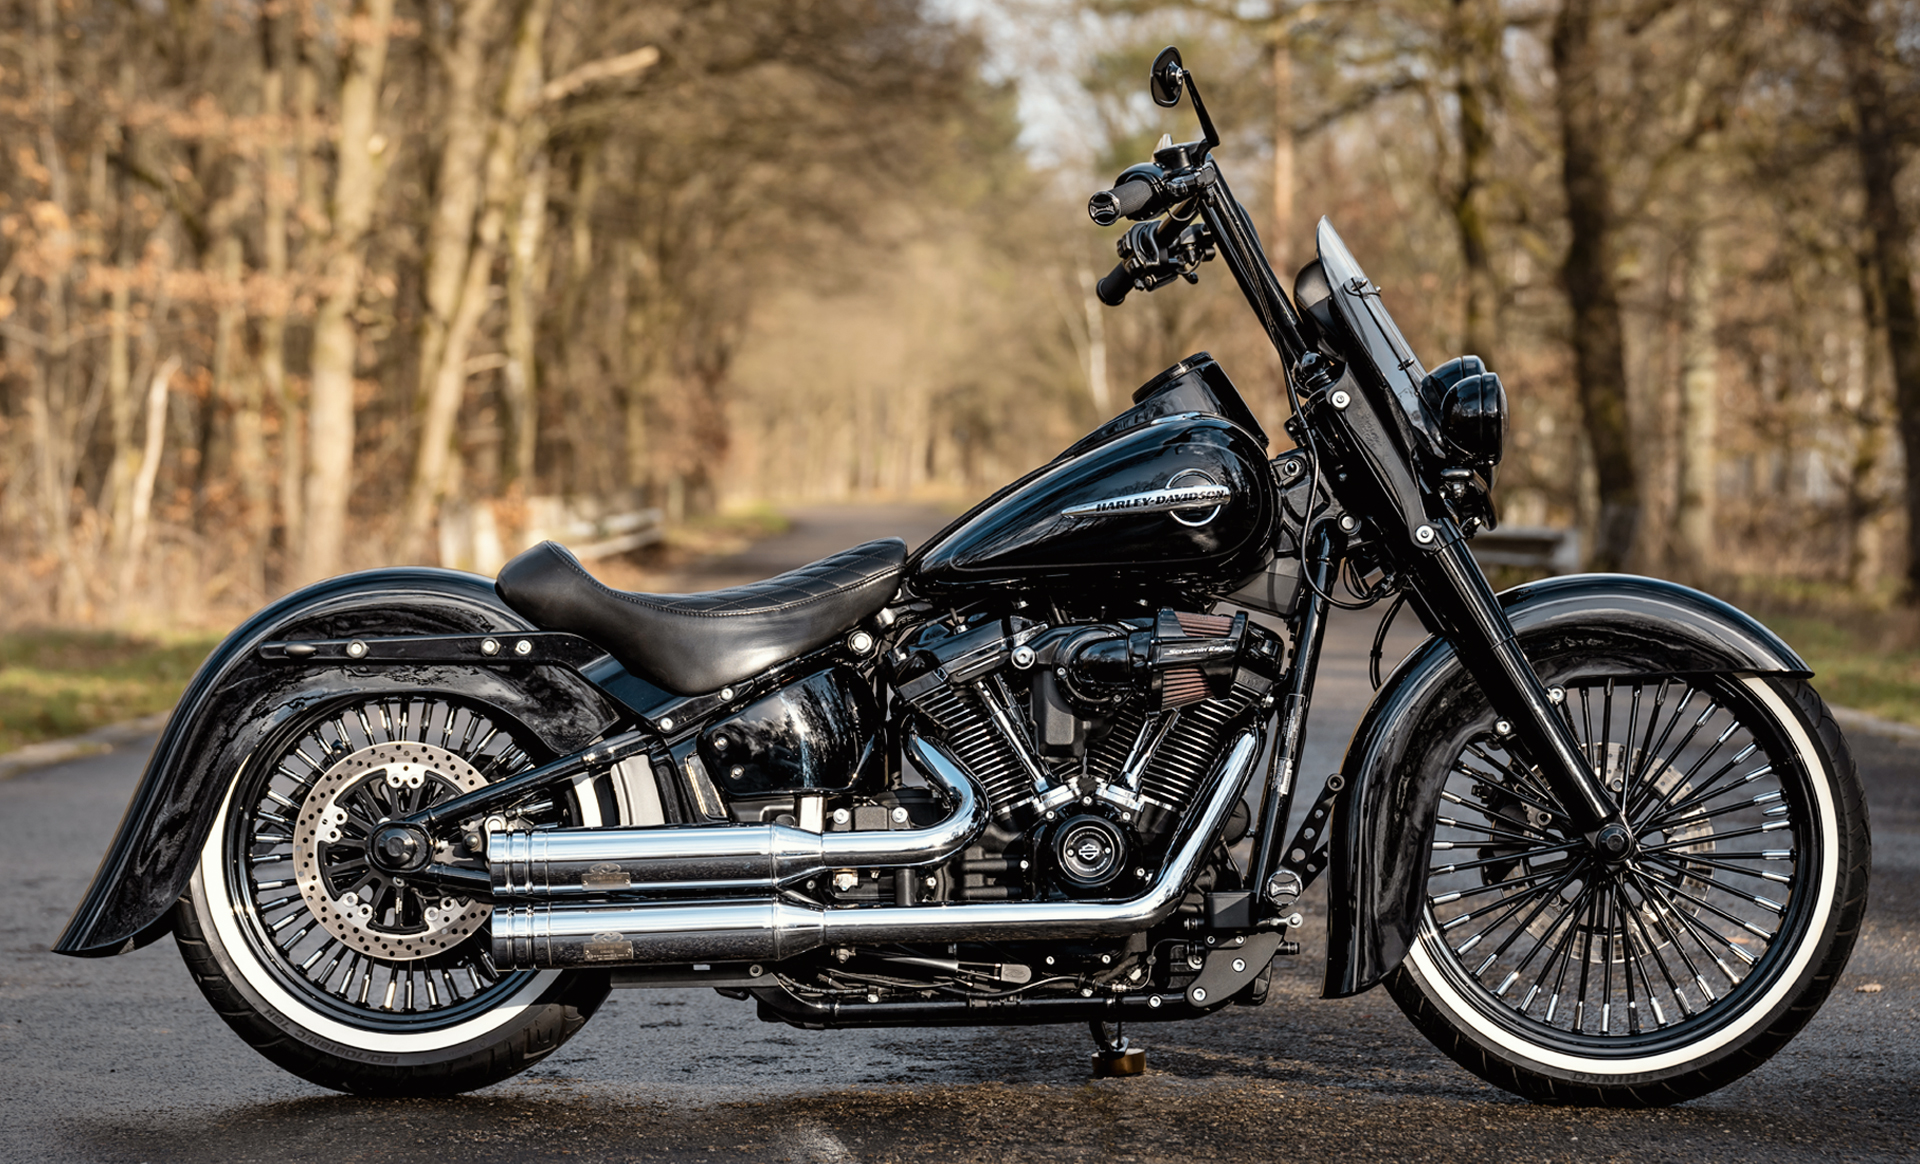 Harley Davidson Lấp Lánh Xe  Ảnh miễn phí trên Pixabay